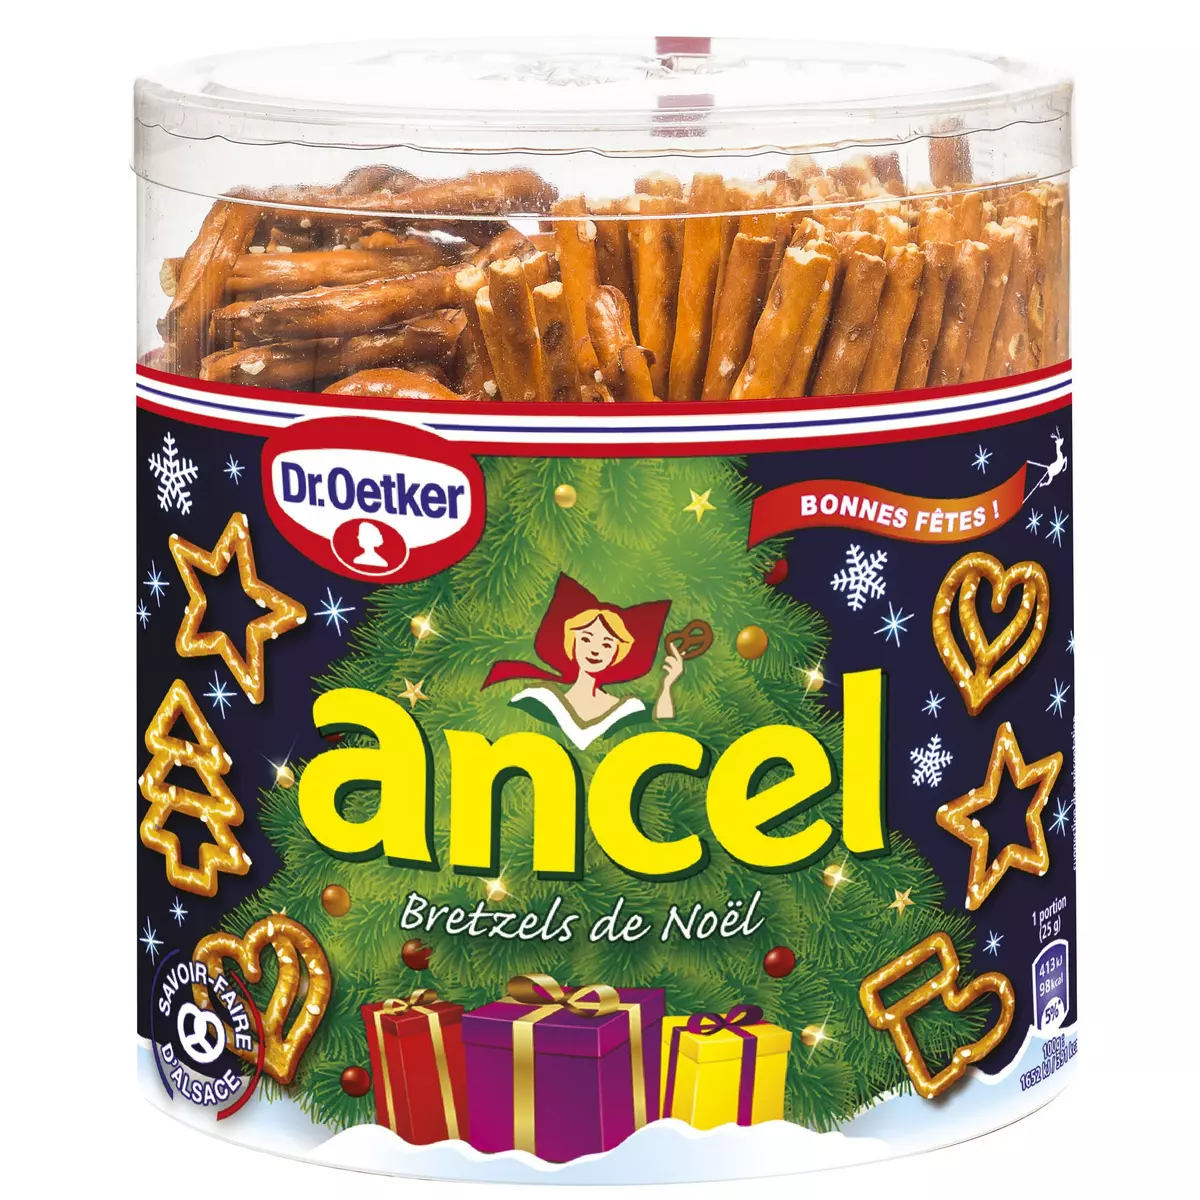 ANCEL Sticks bretzels de Noël 300g